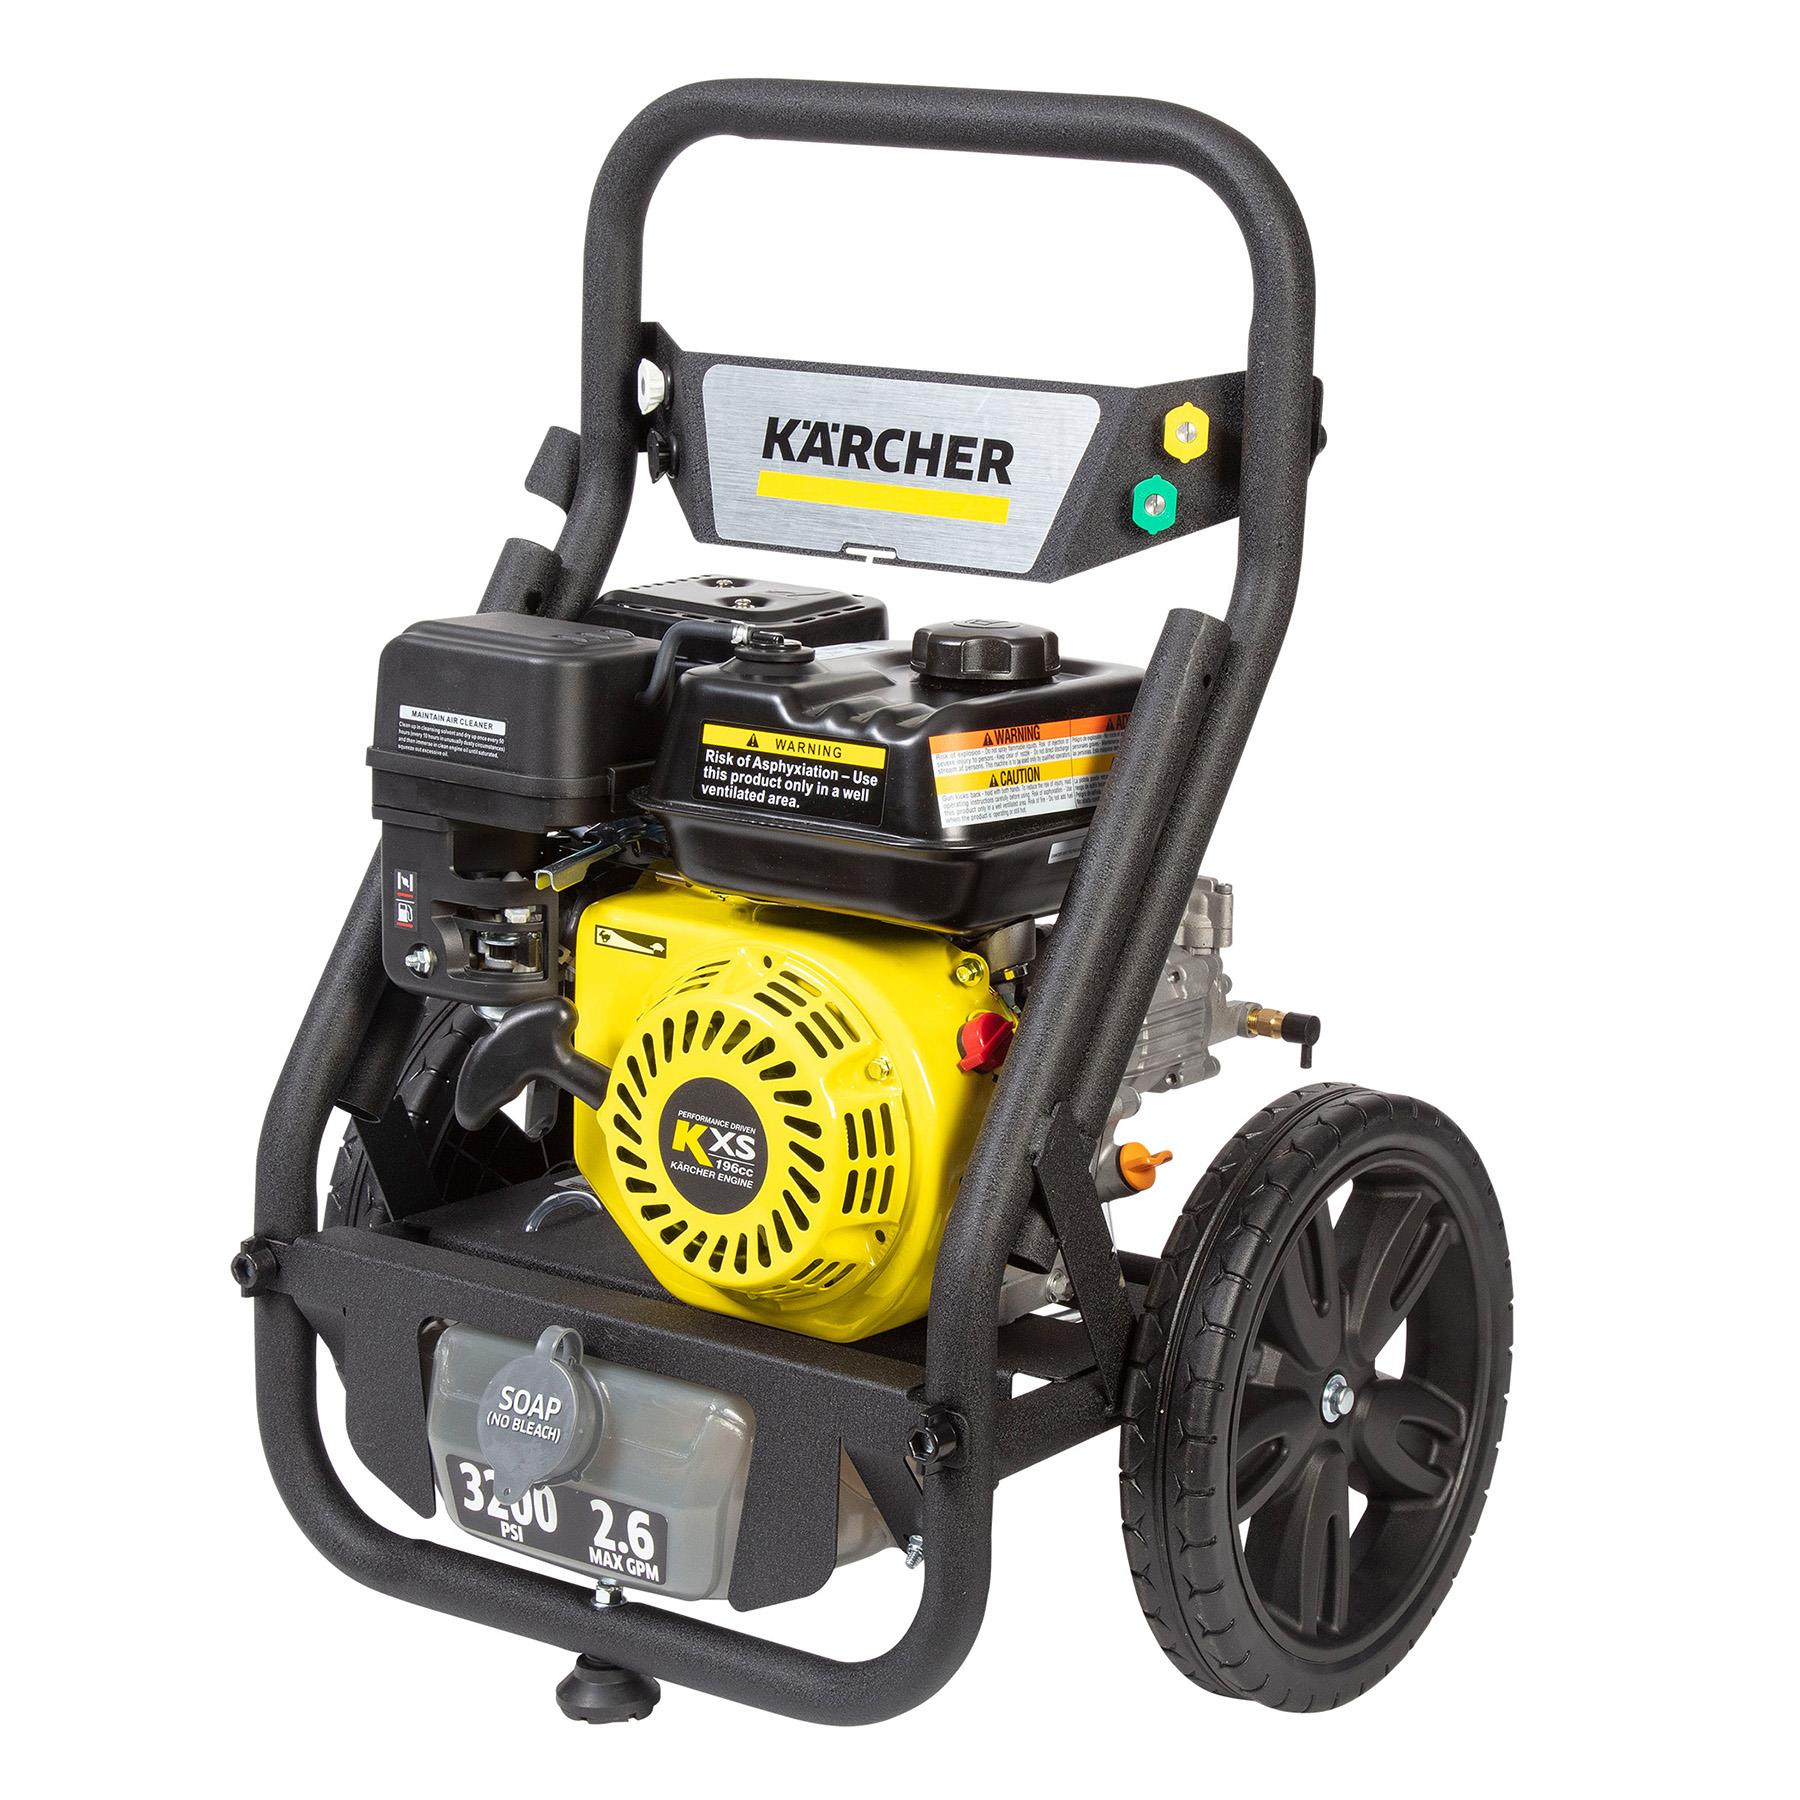 Karcher Car Dashboard Cleaner 500ml, Pressure Washers, Garden Power Tools, Lawn & Garden, Outdoor, All Brands